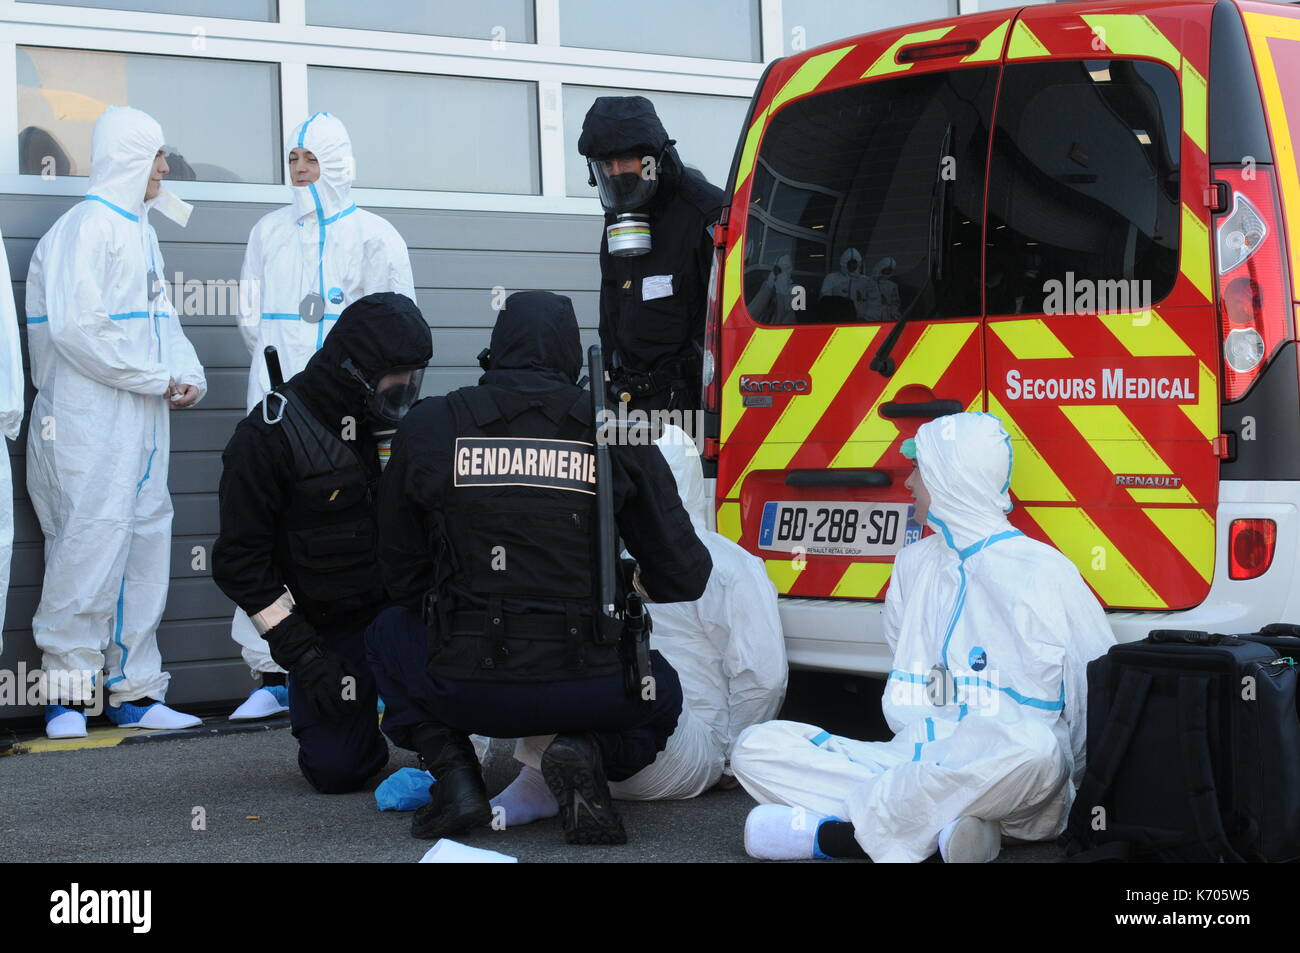 Les forces de sauvetage participent à un exercice organisé pour faire face à l'attaque terroriste du BCRN, Saint-Priest, France Banque D'Images